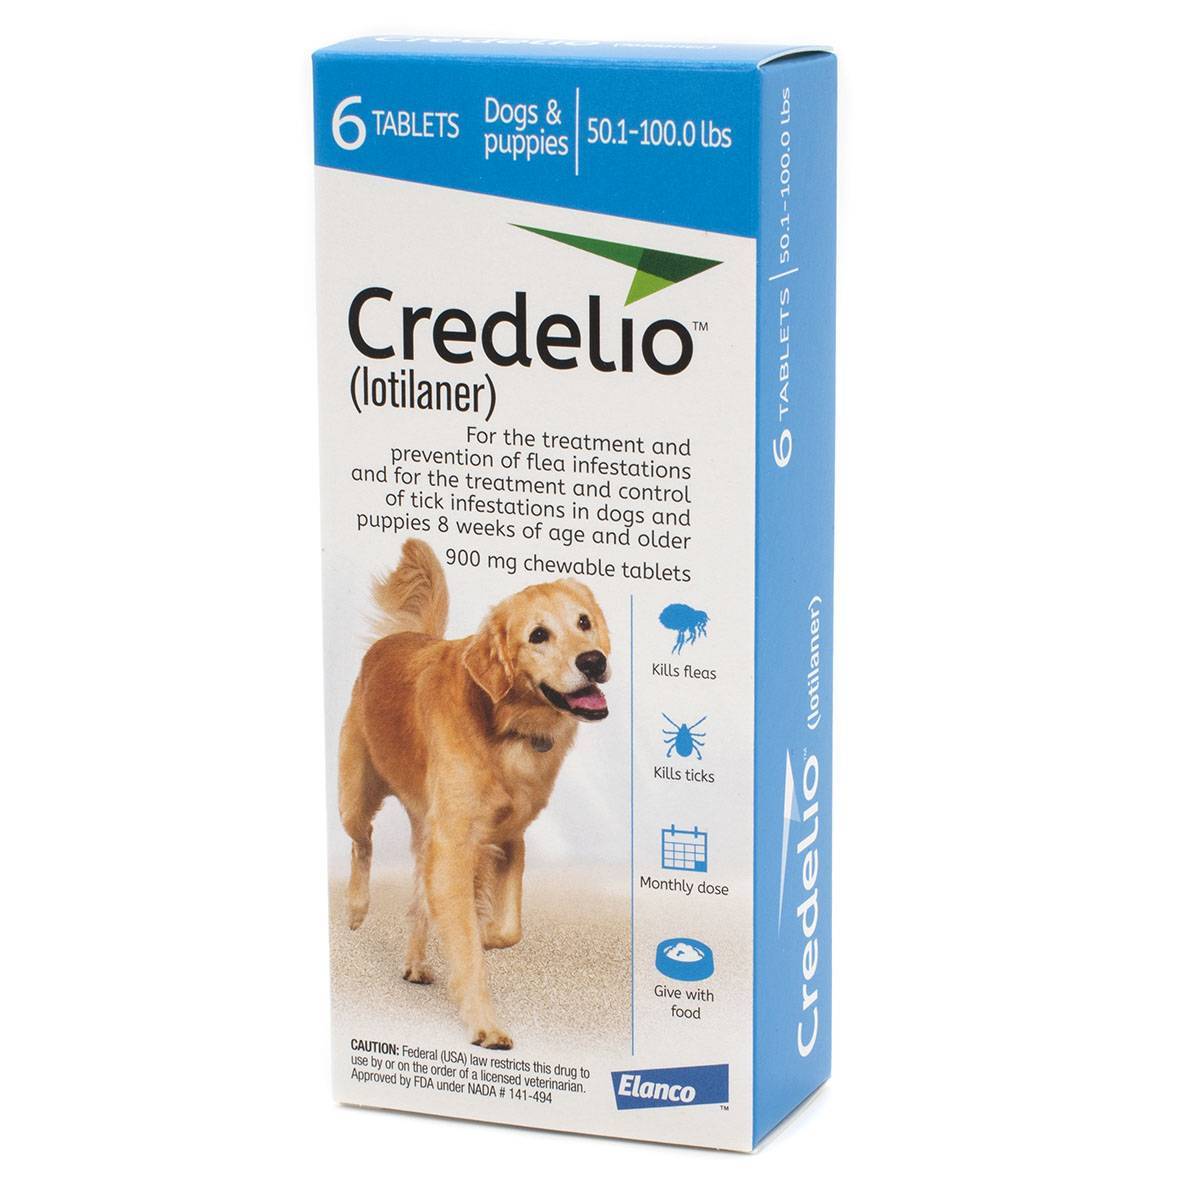 Credelio for Dogs Chewable Flea and Tick Preventative VetRxDirect